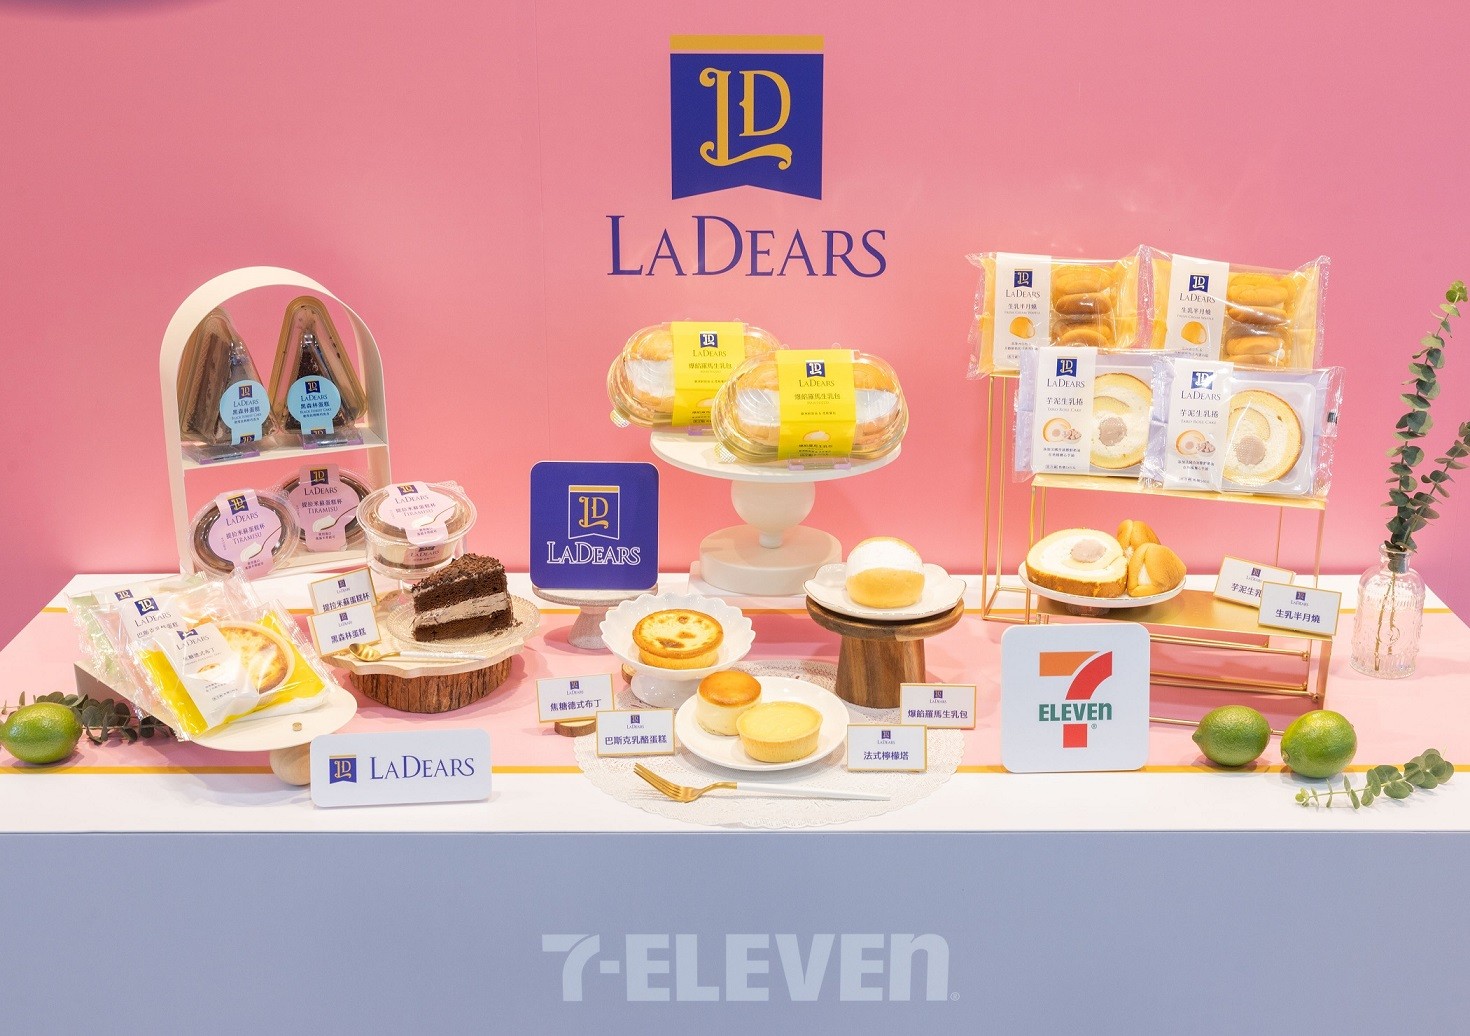 02.7-ELEVEN自今年5月起推出全新甜點品牌「LA DEARS」，強調個人專屬獨處享用甜食的幸福療癒感，並以「淺嚐一份甜，療癒每一天」為標語，將「西式冷藏甜點」做為開發主軸